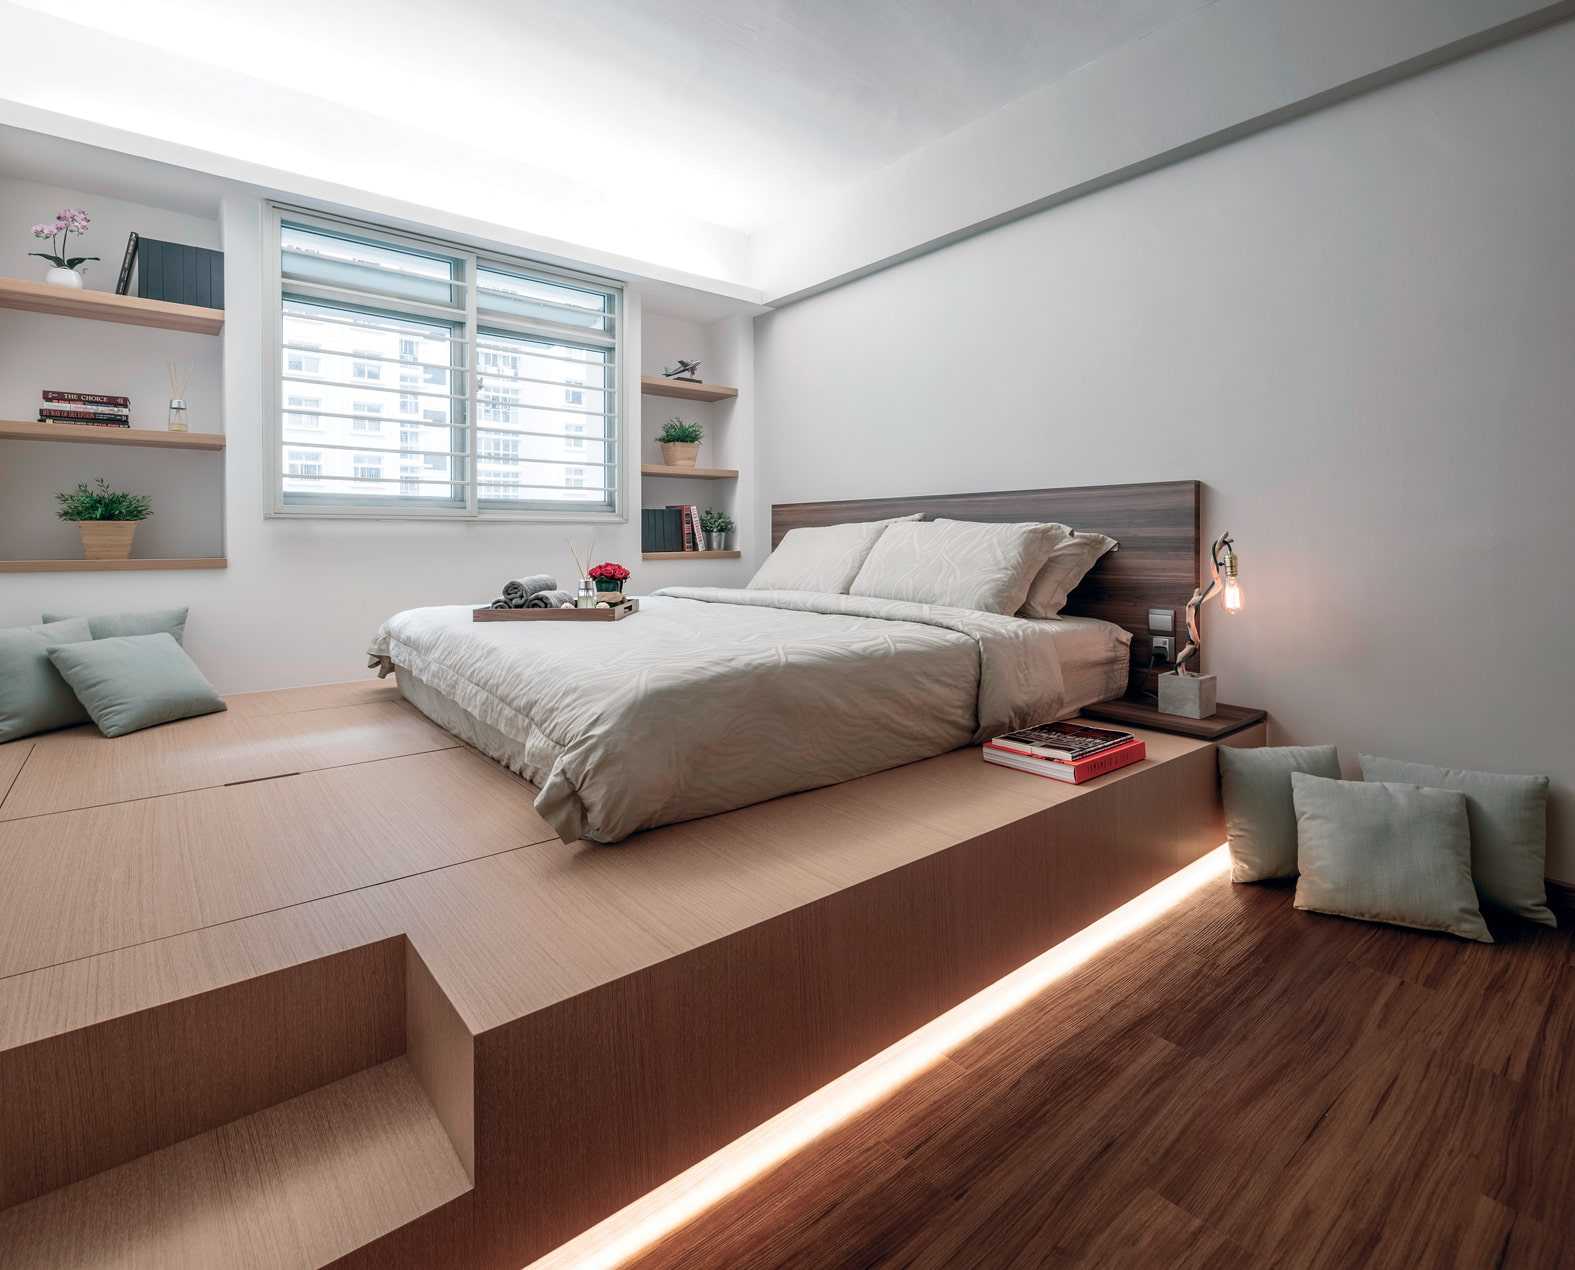 Как сделать светодиодную подсветку кровати?